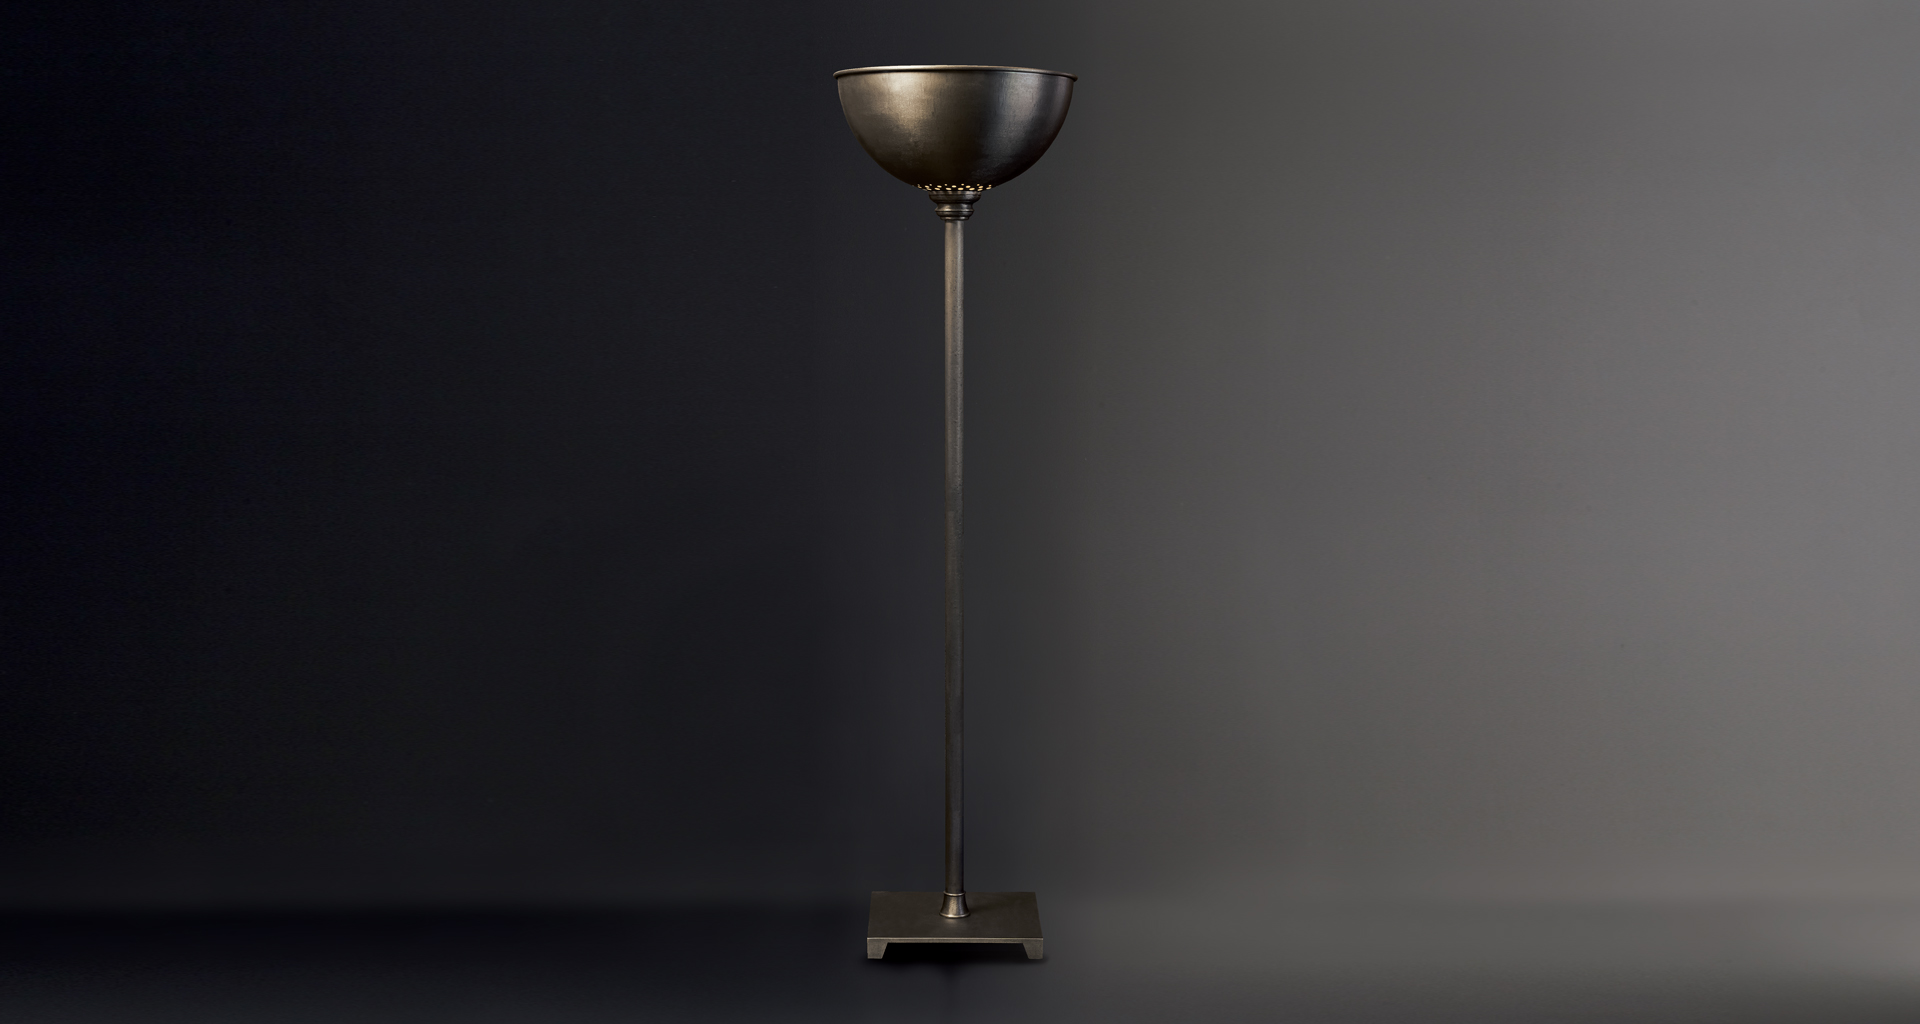 Charlotte è una lampada da terra a LED in bronzo con diffusore in metacrilato, del catalogo di Promemoria | Promemoria